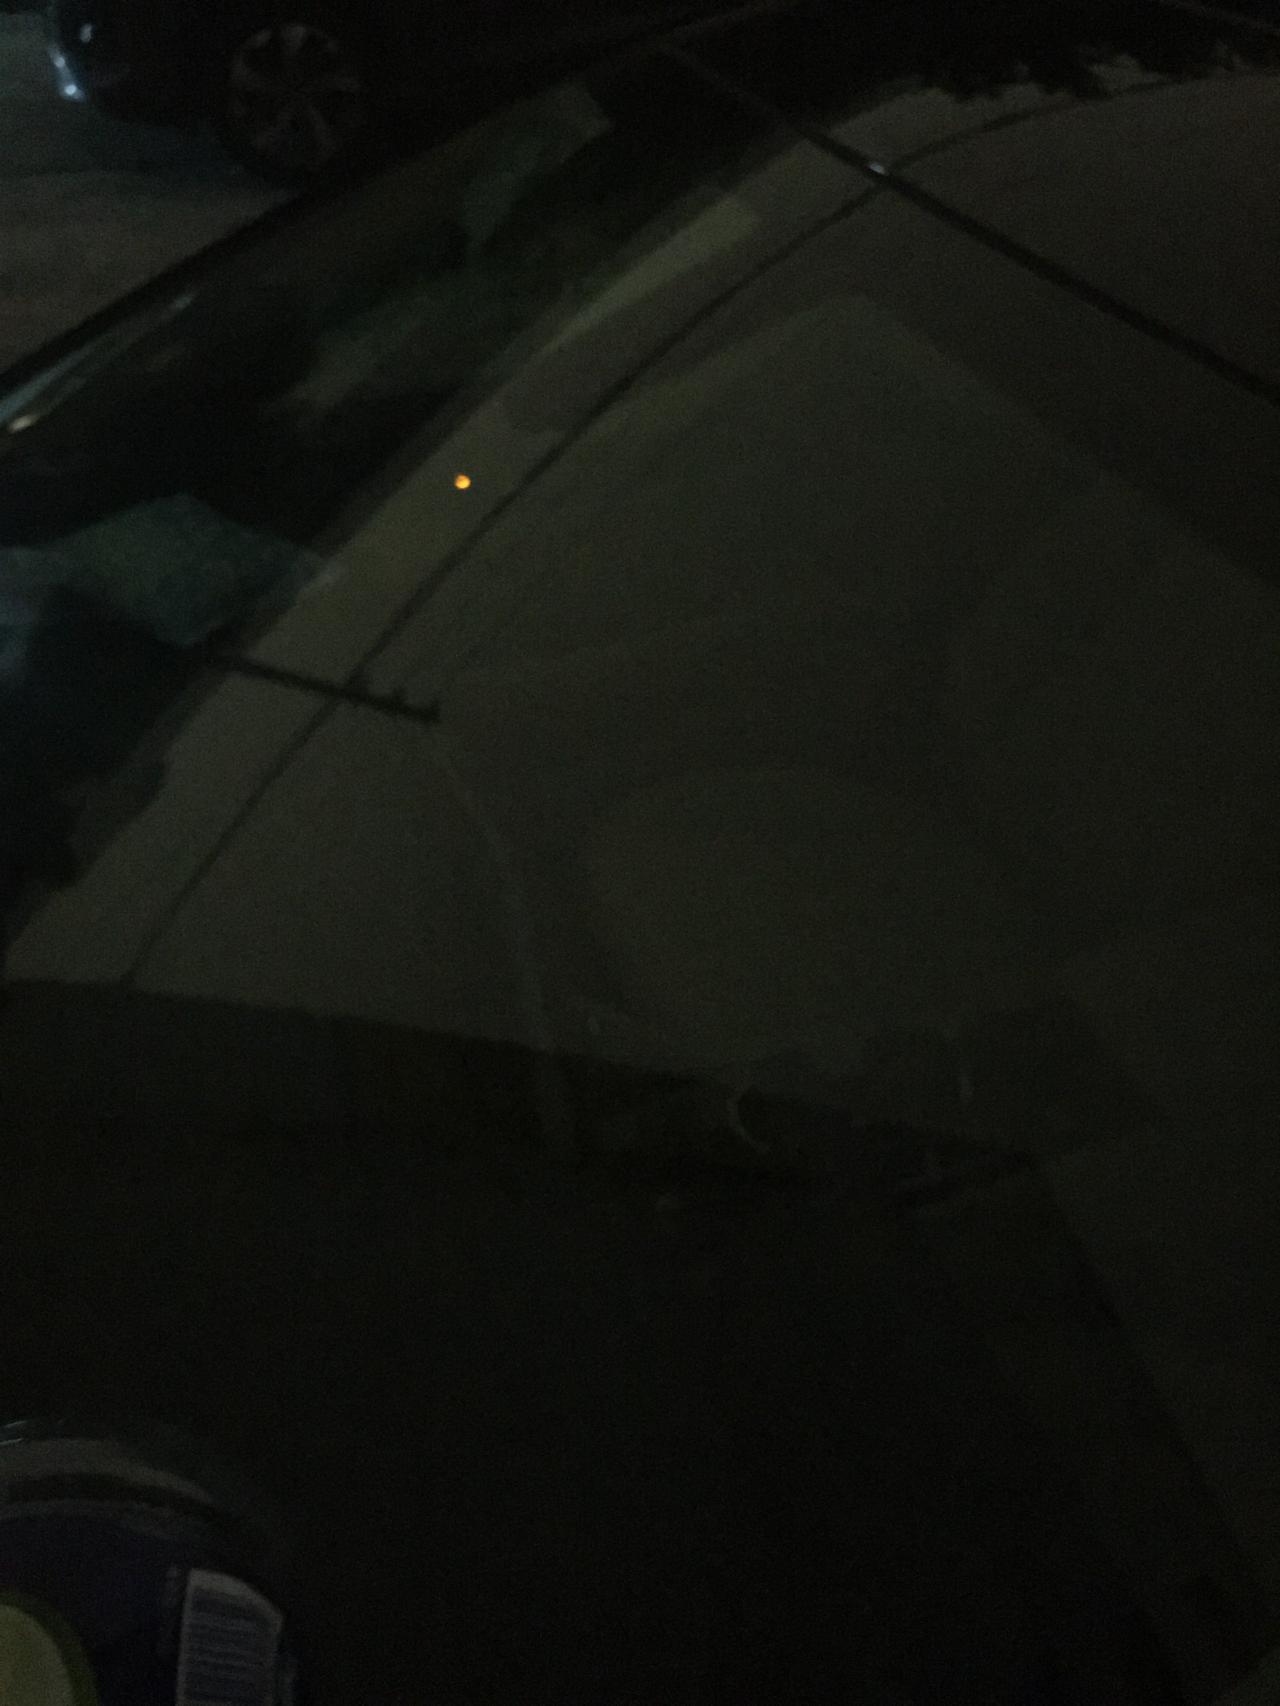 别克君威 锁车后车车窗下面小黄灯亮着是怎么回事啊